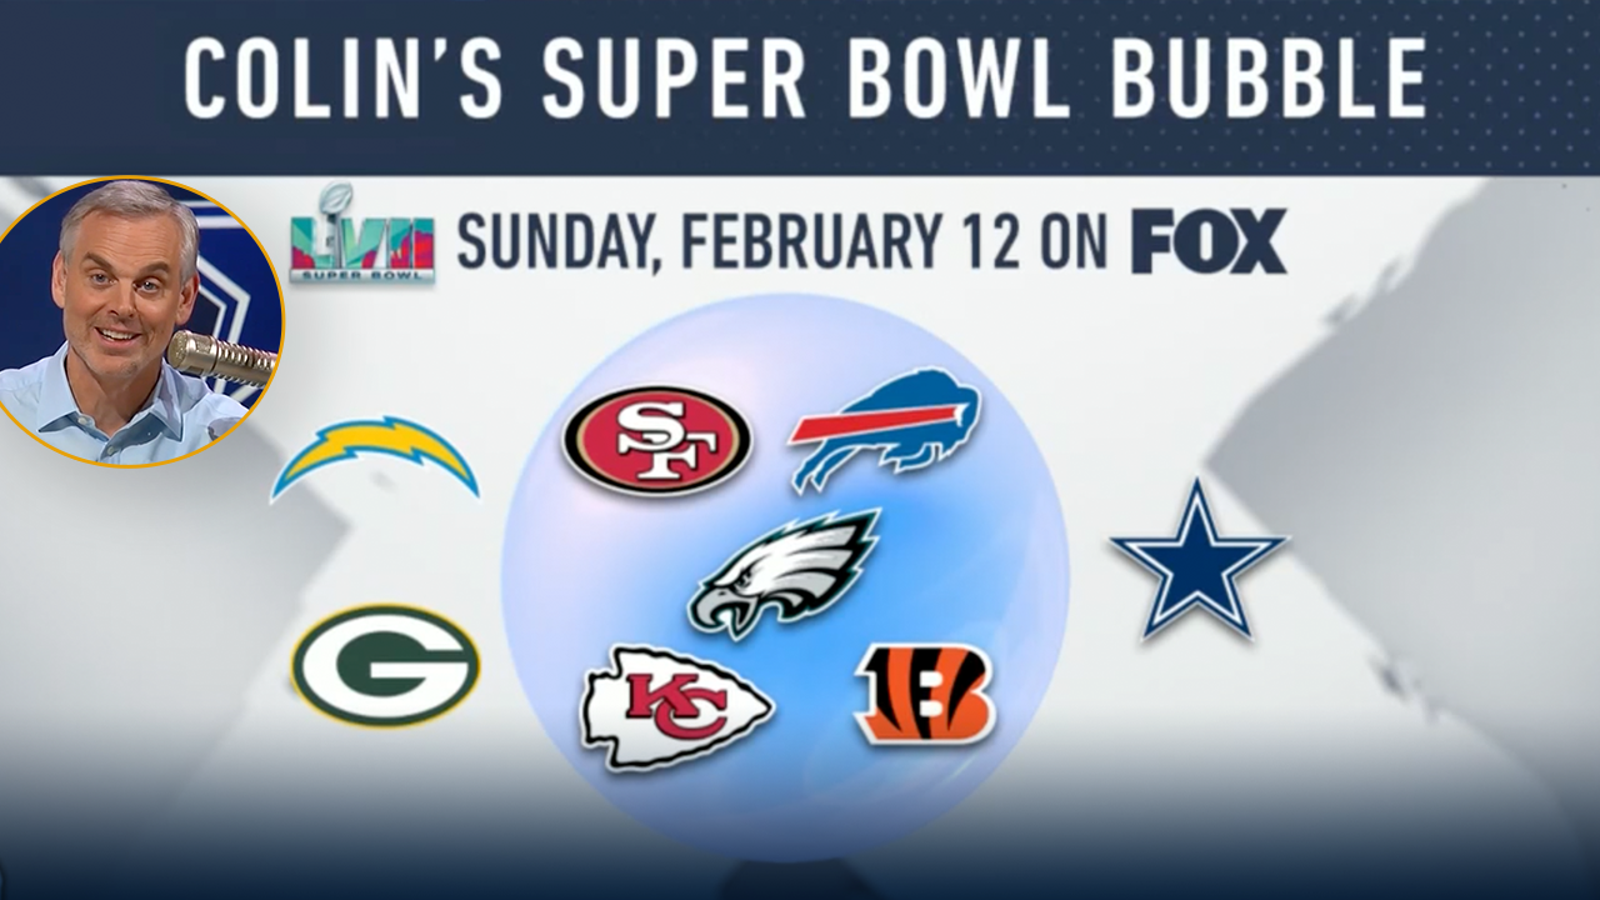 Where do the Dallas Cowboys fit in Collin's Super Bowl bubble? 